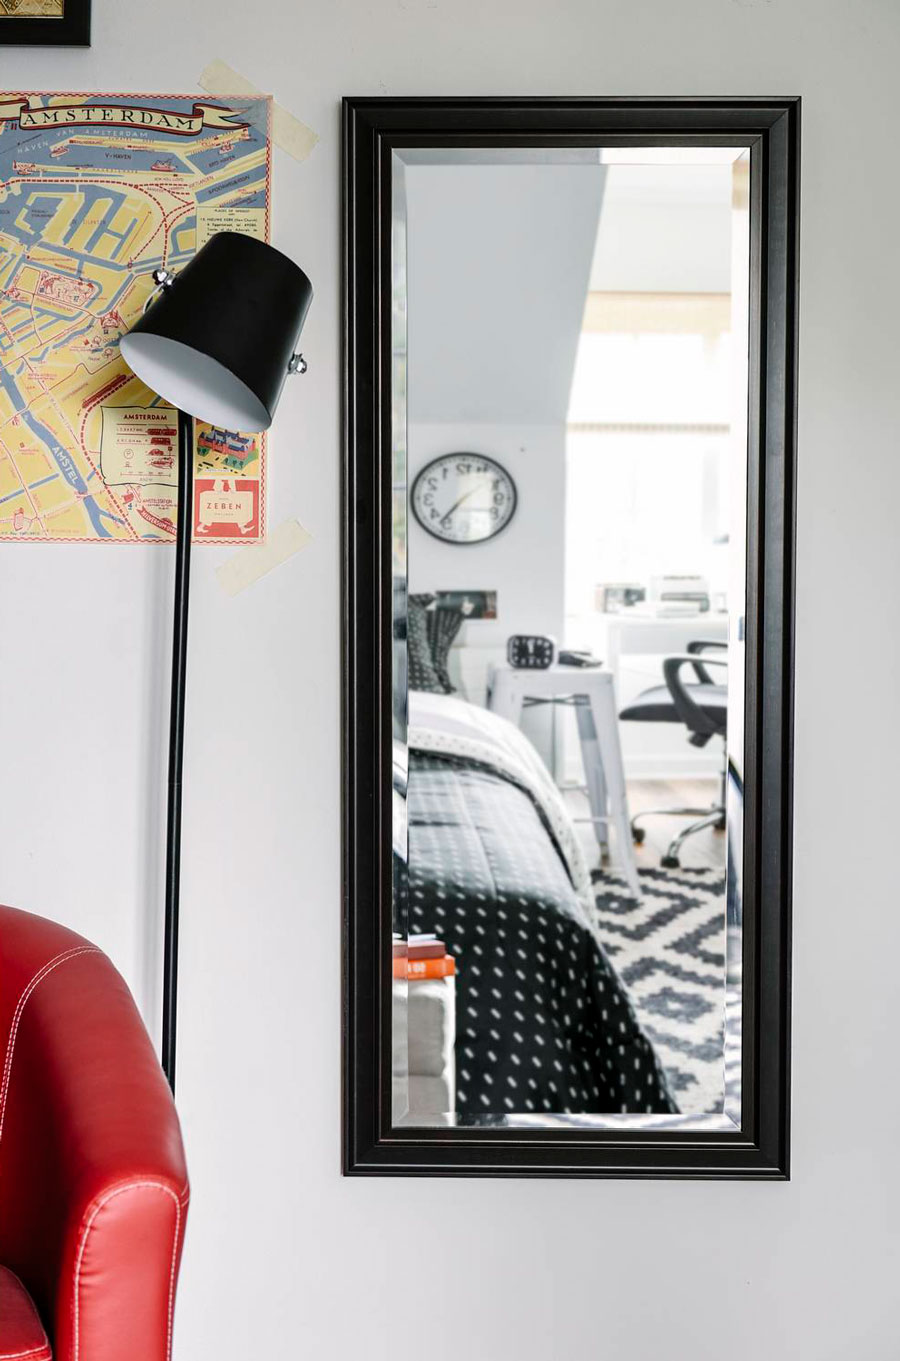 Detalle de una pared de un dormitorio con un espejo rectangular de cuerpo completo y marco negro. Al costado hay una lámpara de pie negra, un mapa pegado en la pared y parte de un sofá rojo. En el reflejo del espejo se ve parte de la cama y escritorio.